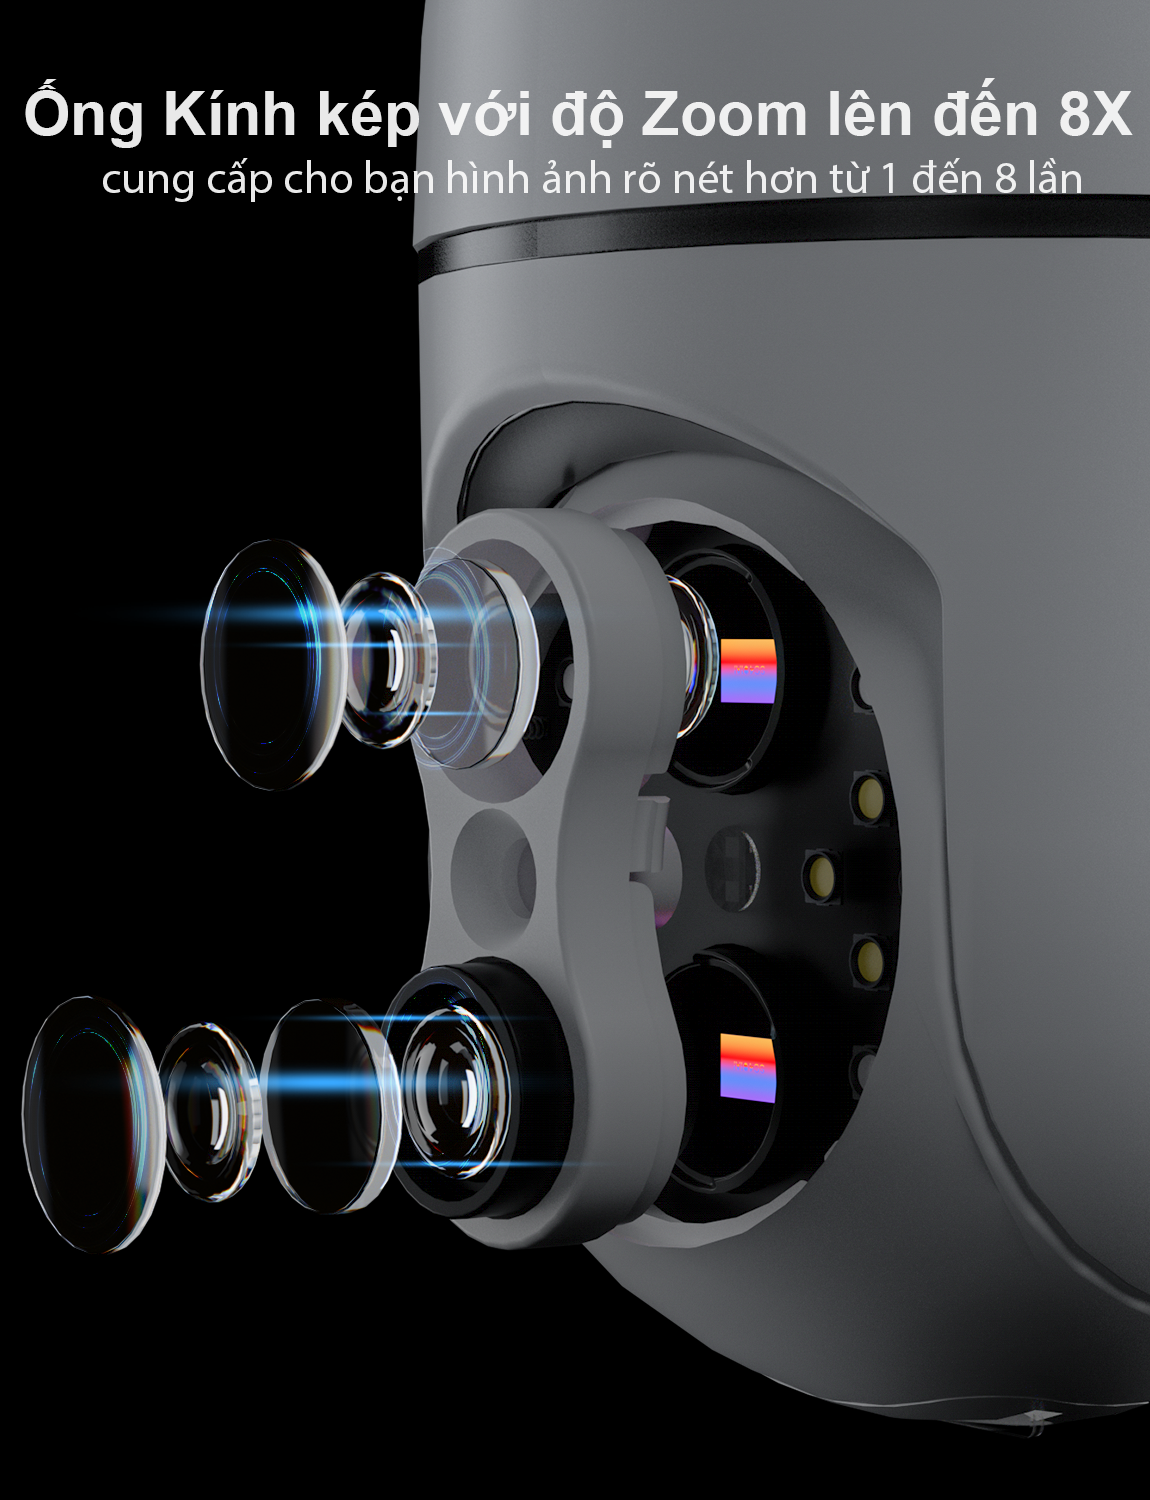 Camera IPC360 Minion Wifi, hình ảnh rõ nét, đàm thoại 2 chiều, xem hình ảnh ban đêm đầy màu sắc (Hàng nhập khẩu)